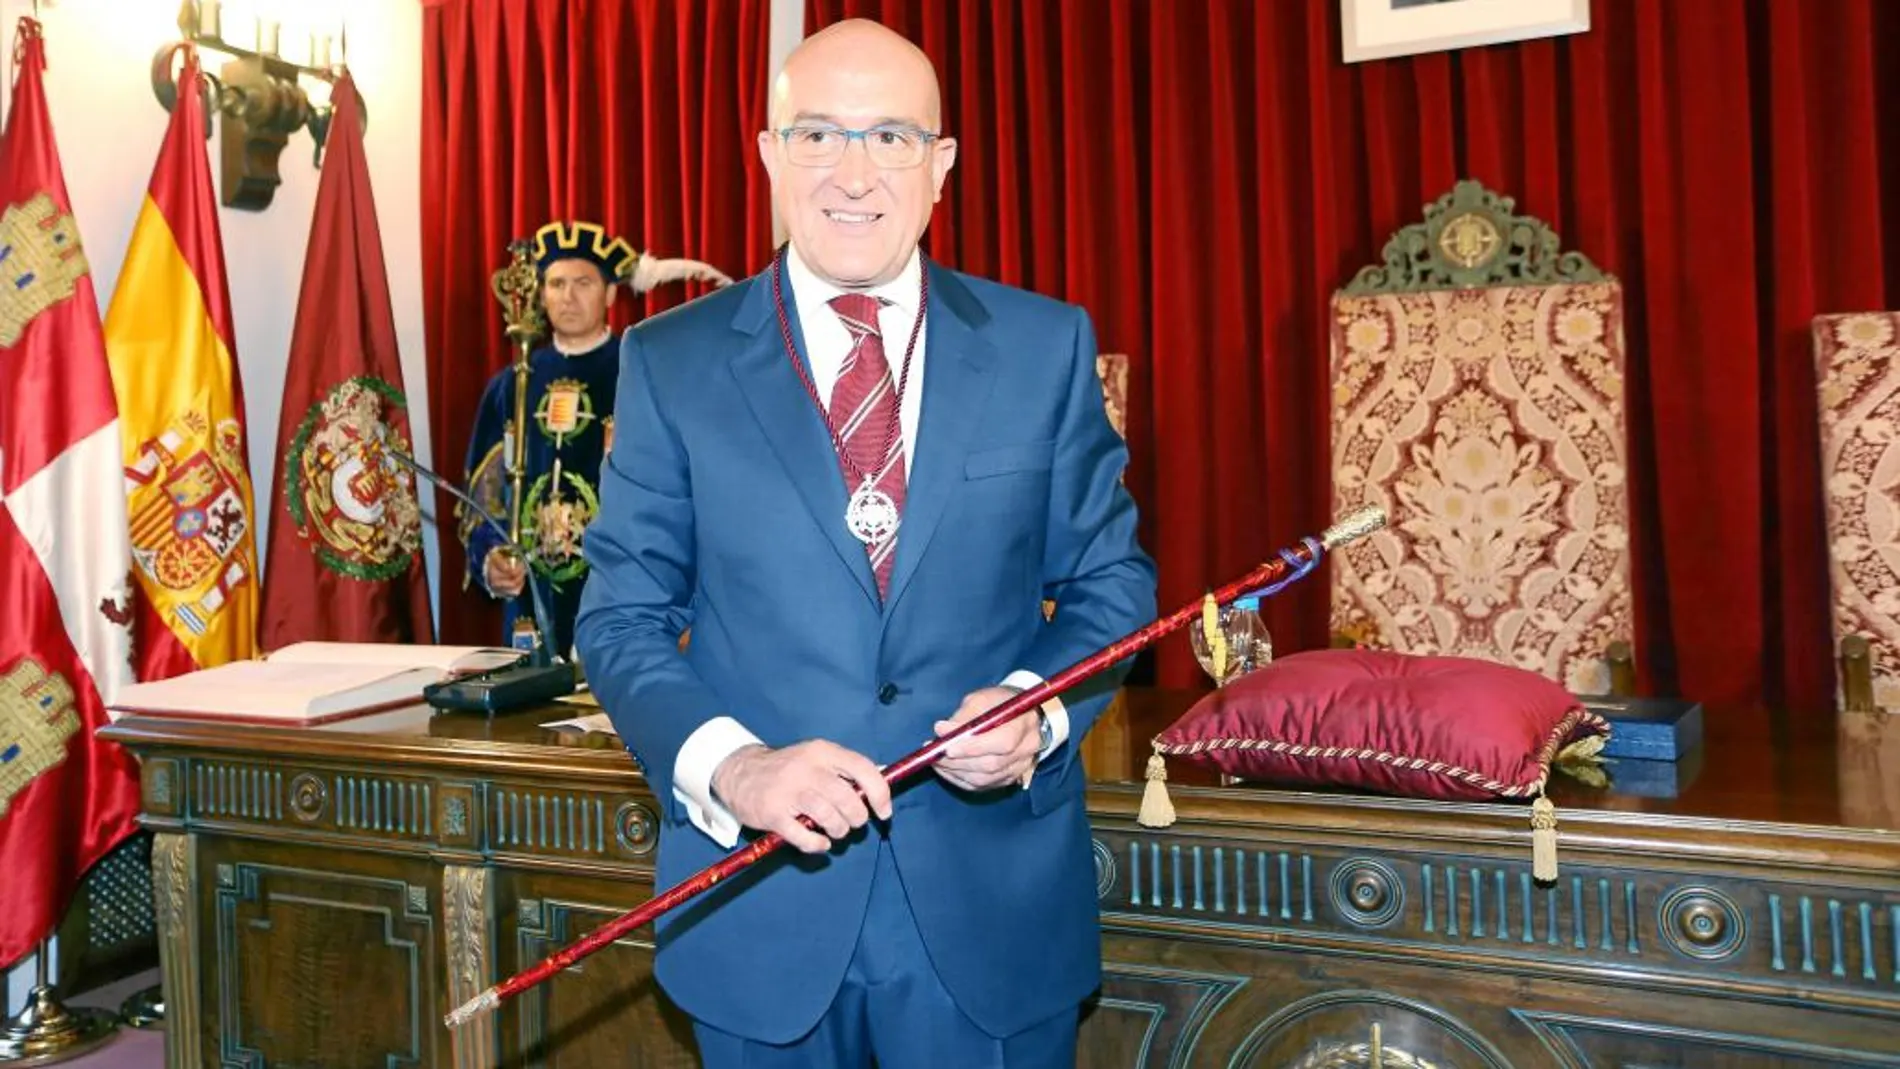 Momento en el que el presidente de la Diputación de Valladolid, Jesús Julio Carnero, recibe el bastón de manda para liderar la institución provincial otros cuatro años